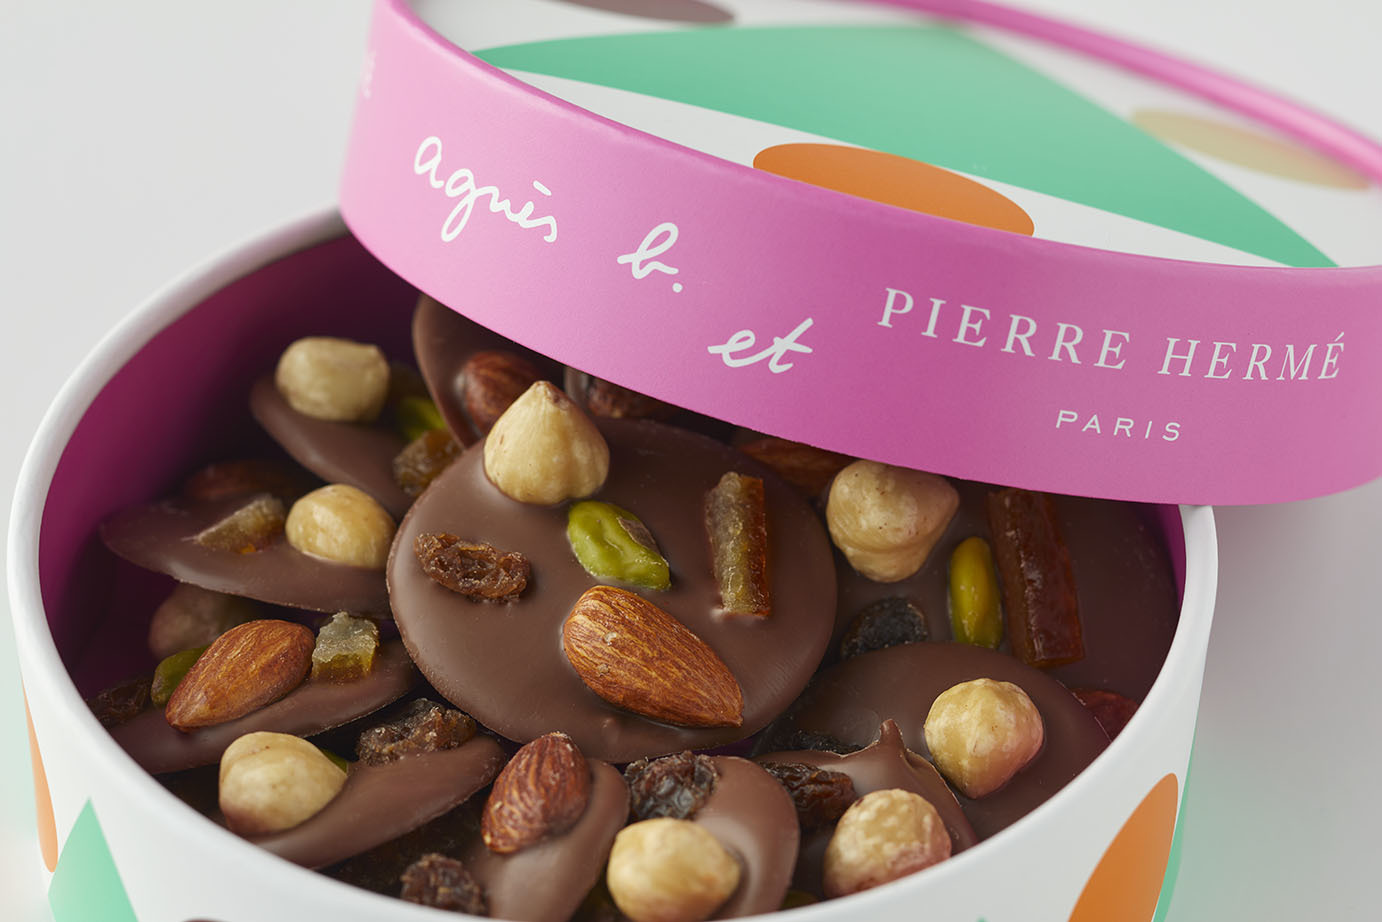 アニエスベー、ピエール・エルメ・パリとの
コラボレーションによるチョコレートを2月1日数量限定販売